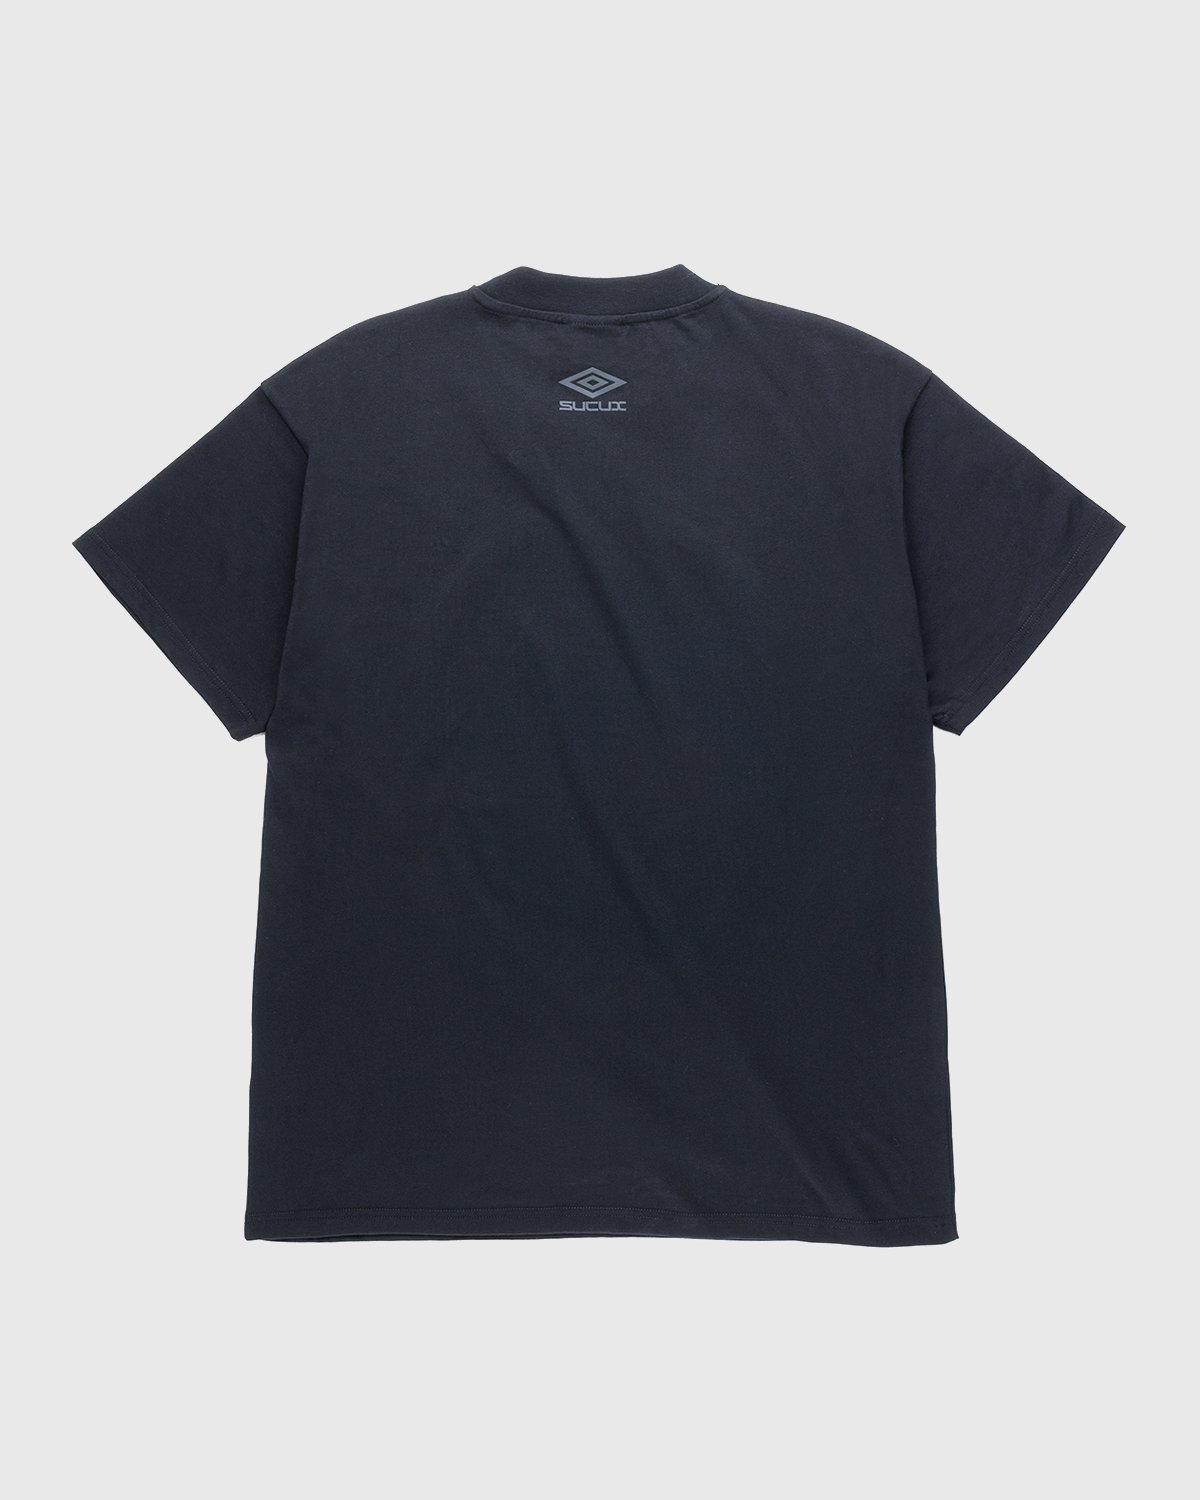 Umbro x Sucux - Oversize T-Shirt Black - Clothing - Black - Image 2